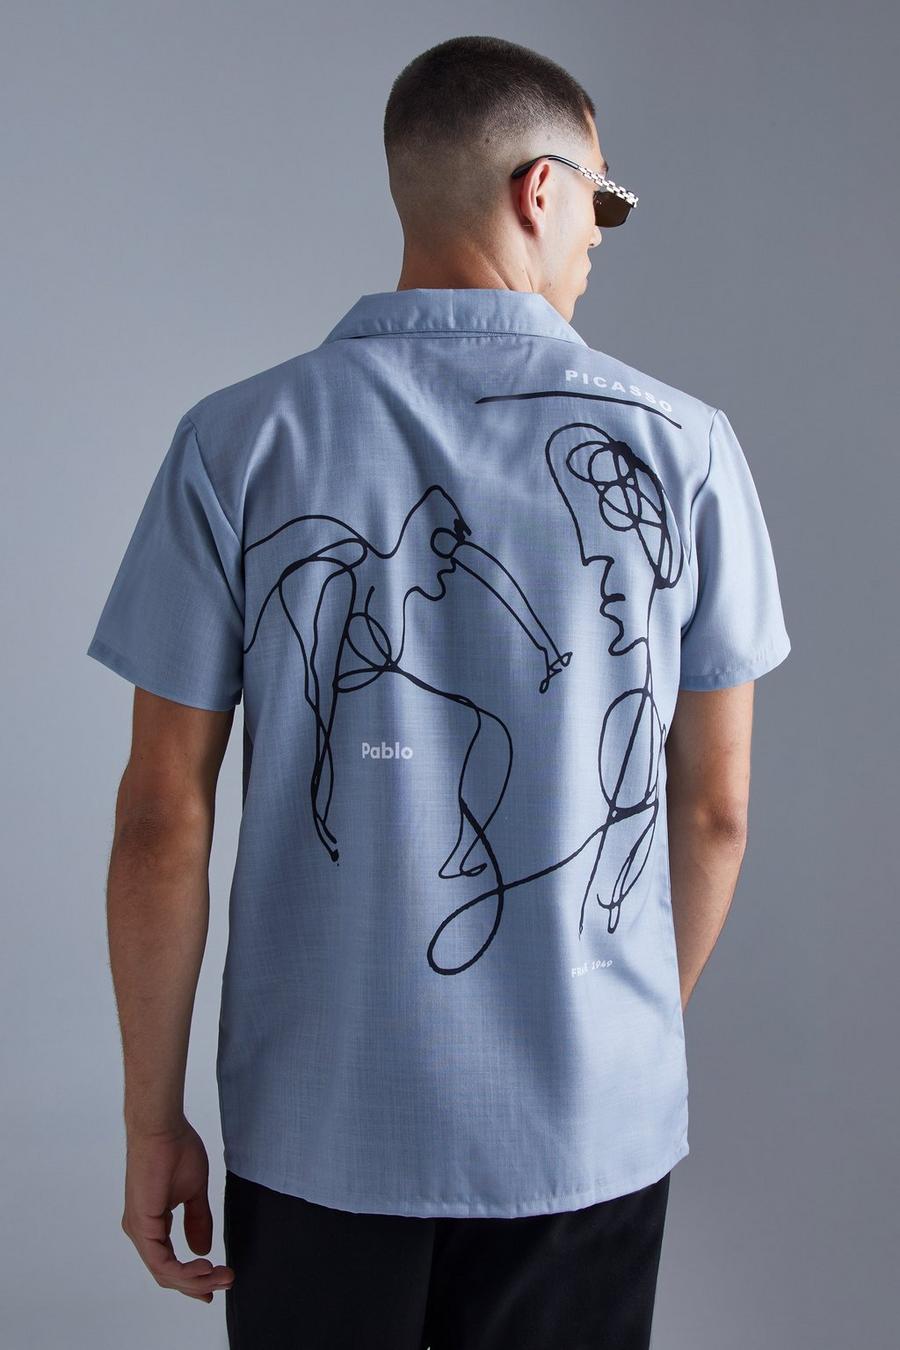 Kurzärmliges Hemd mit Pablo Picasso Print, Grey grau